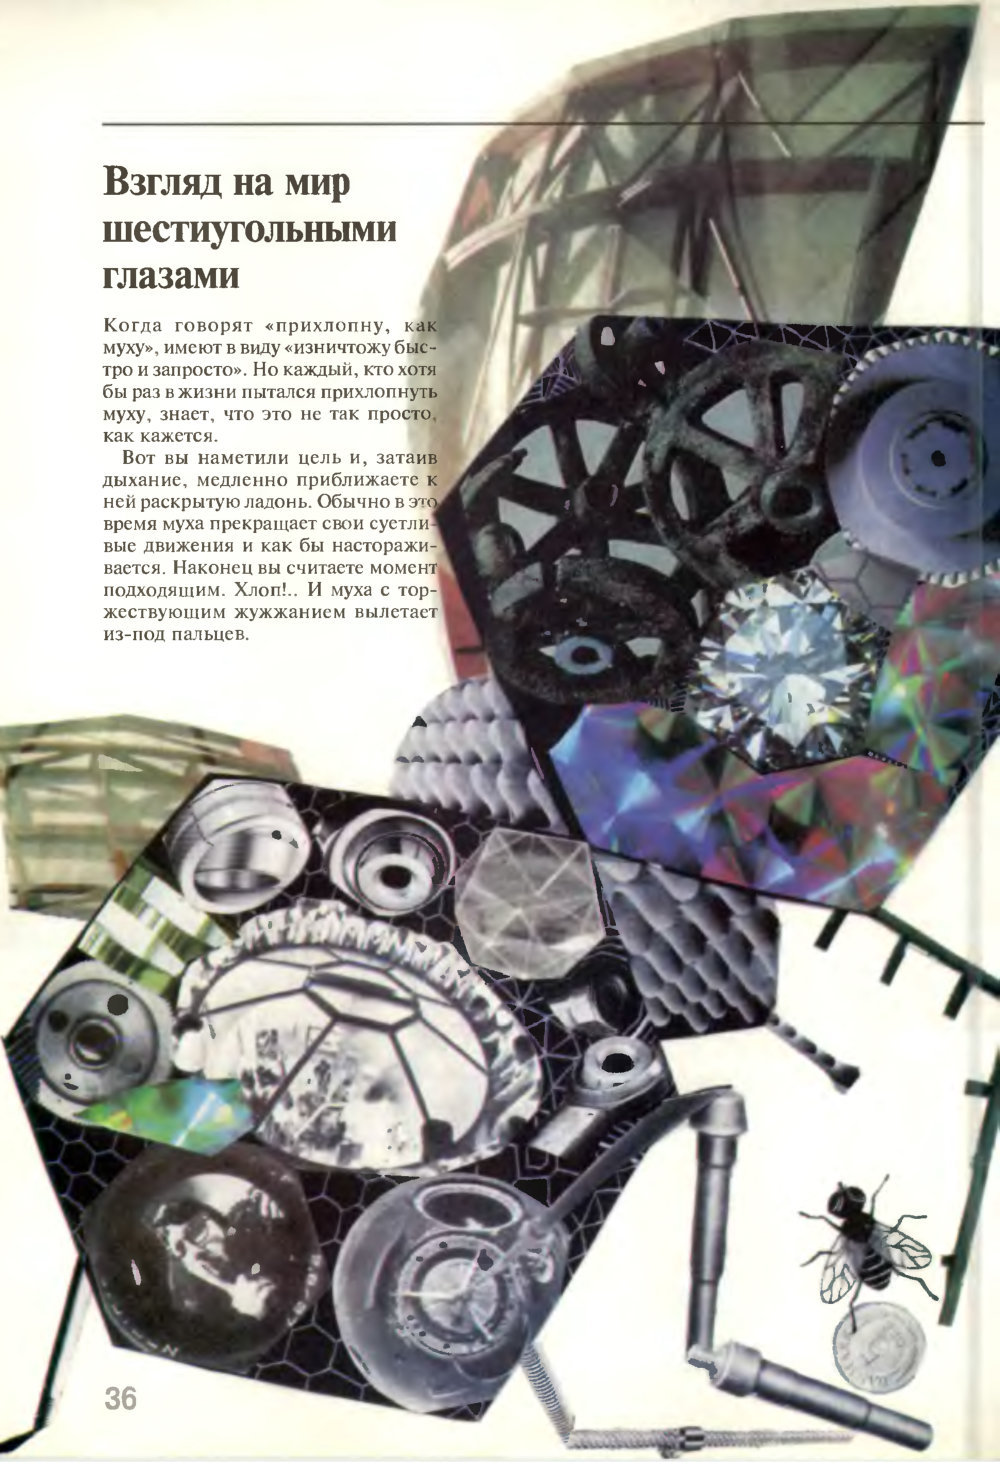 Взгляд на мир шестиугольными глазами. В.Г. Митрофанов. Химия и жизнь, 1995, №5, с.36-41. Фотокопия №1